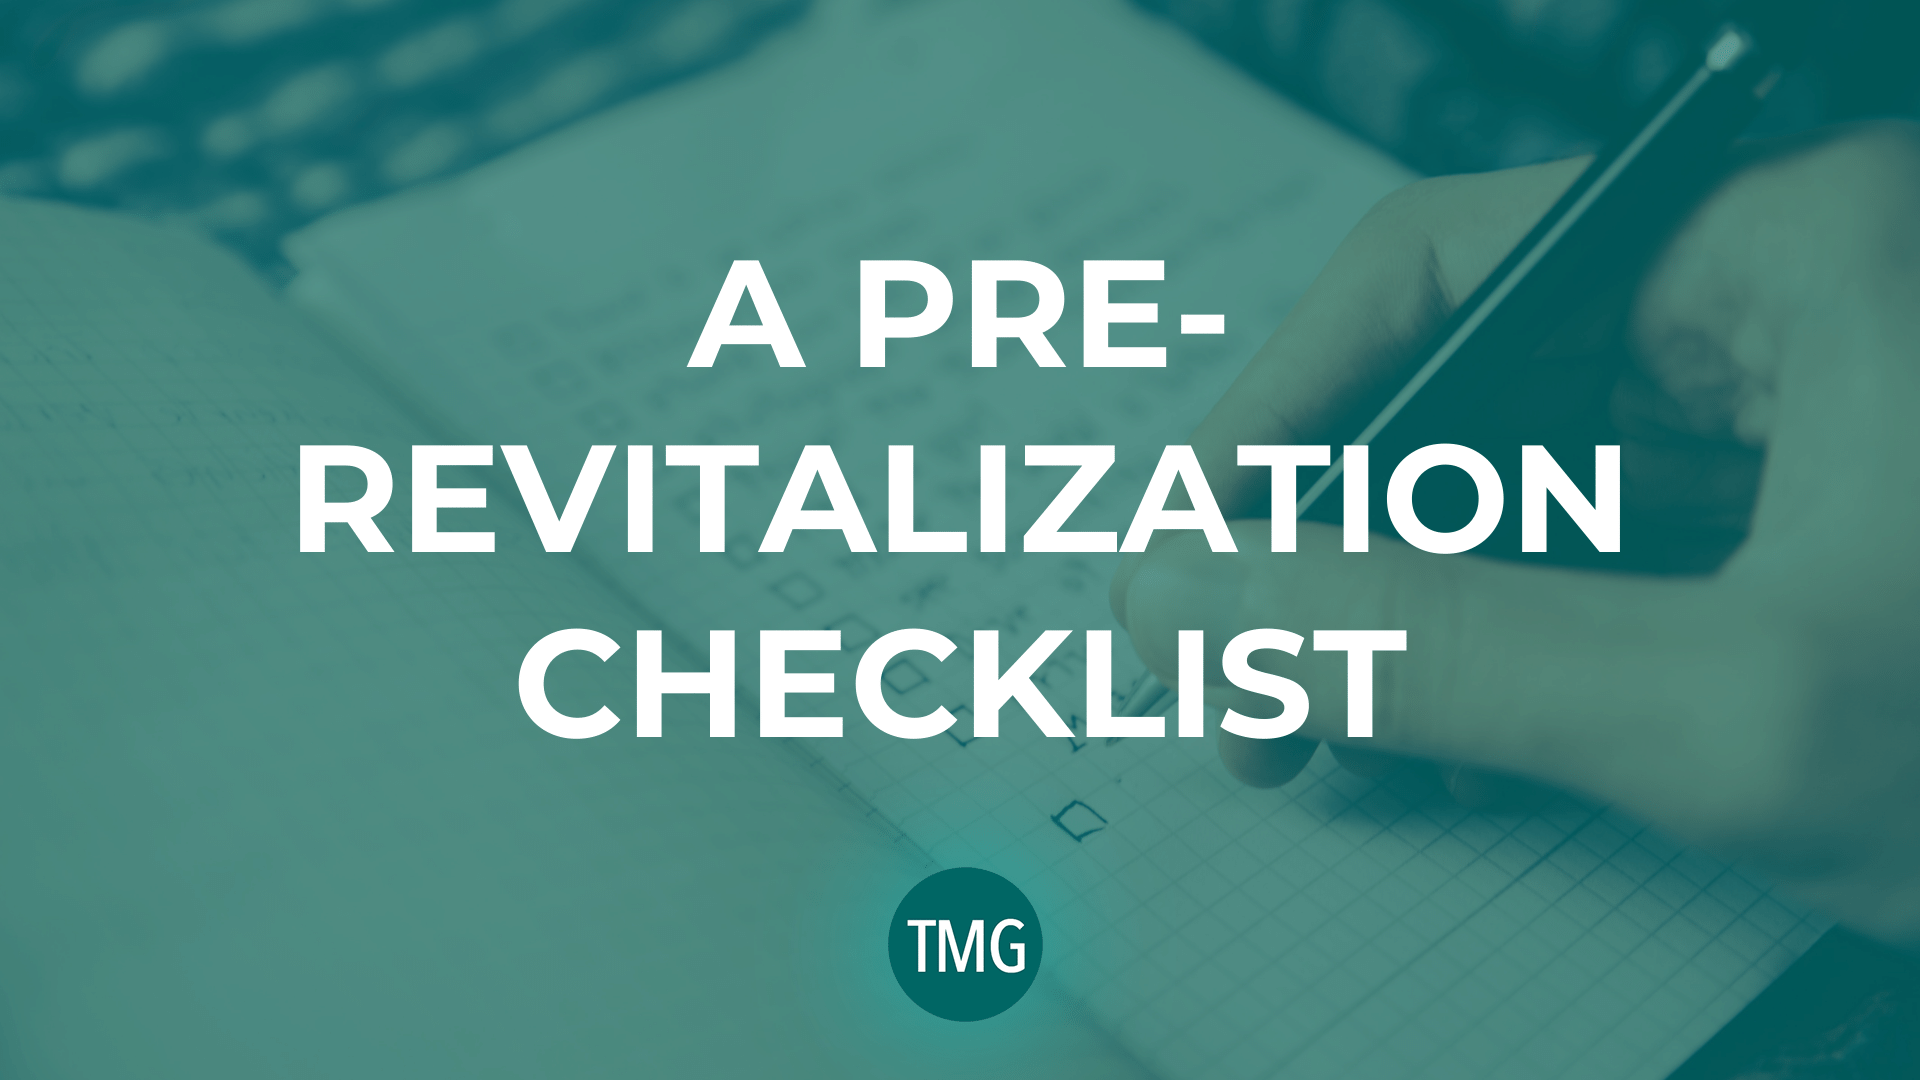 a-pre-revitalization-checklist-for-churches-header-image